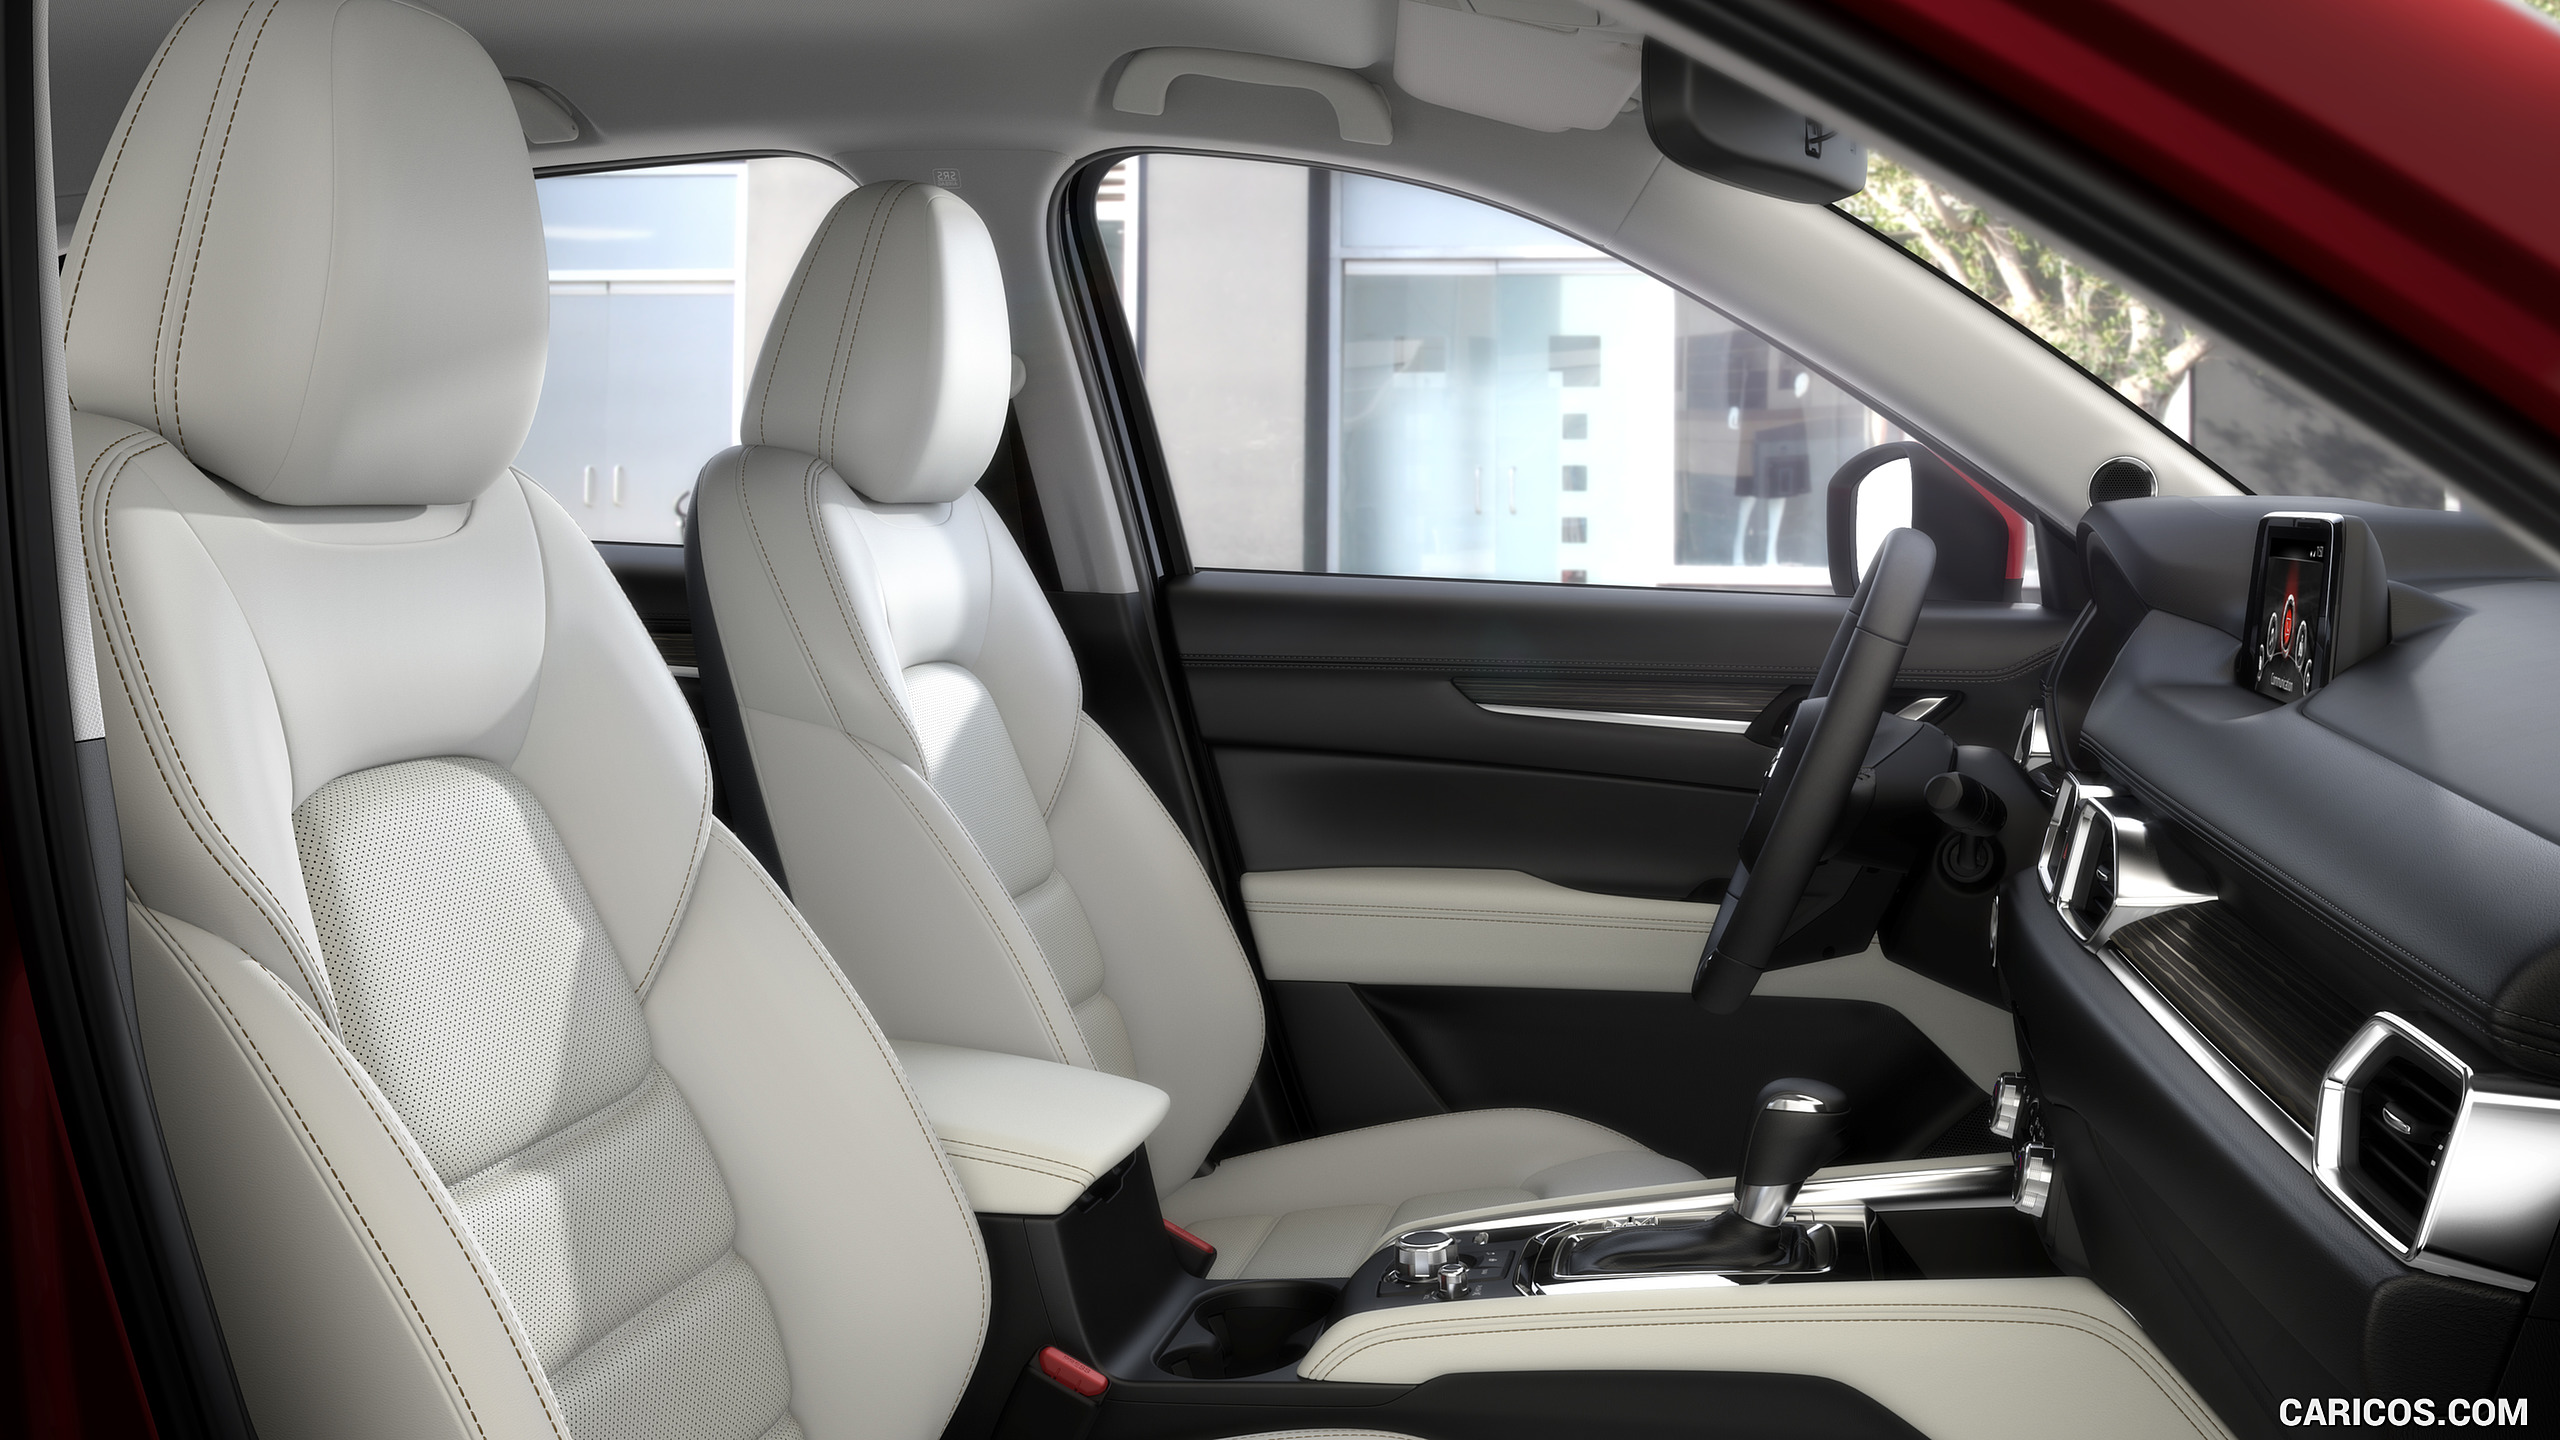 2017 Mazda CX-5 - Interior, Seats, #40 of 42